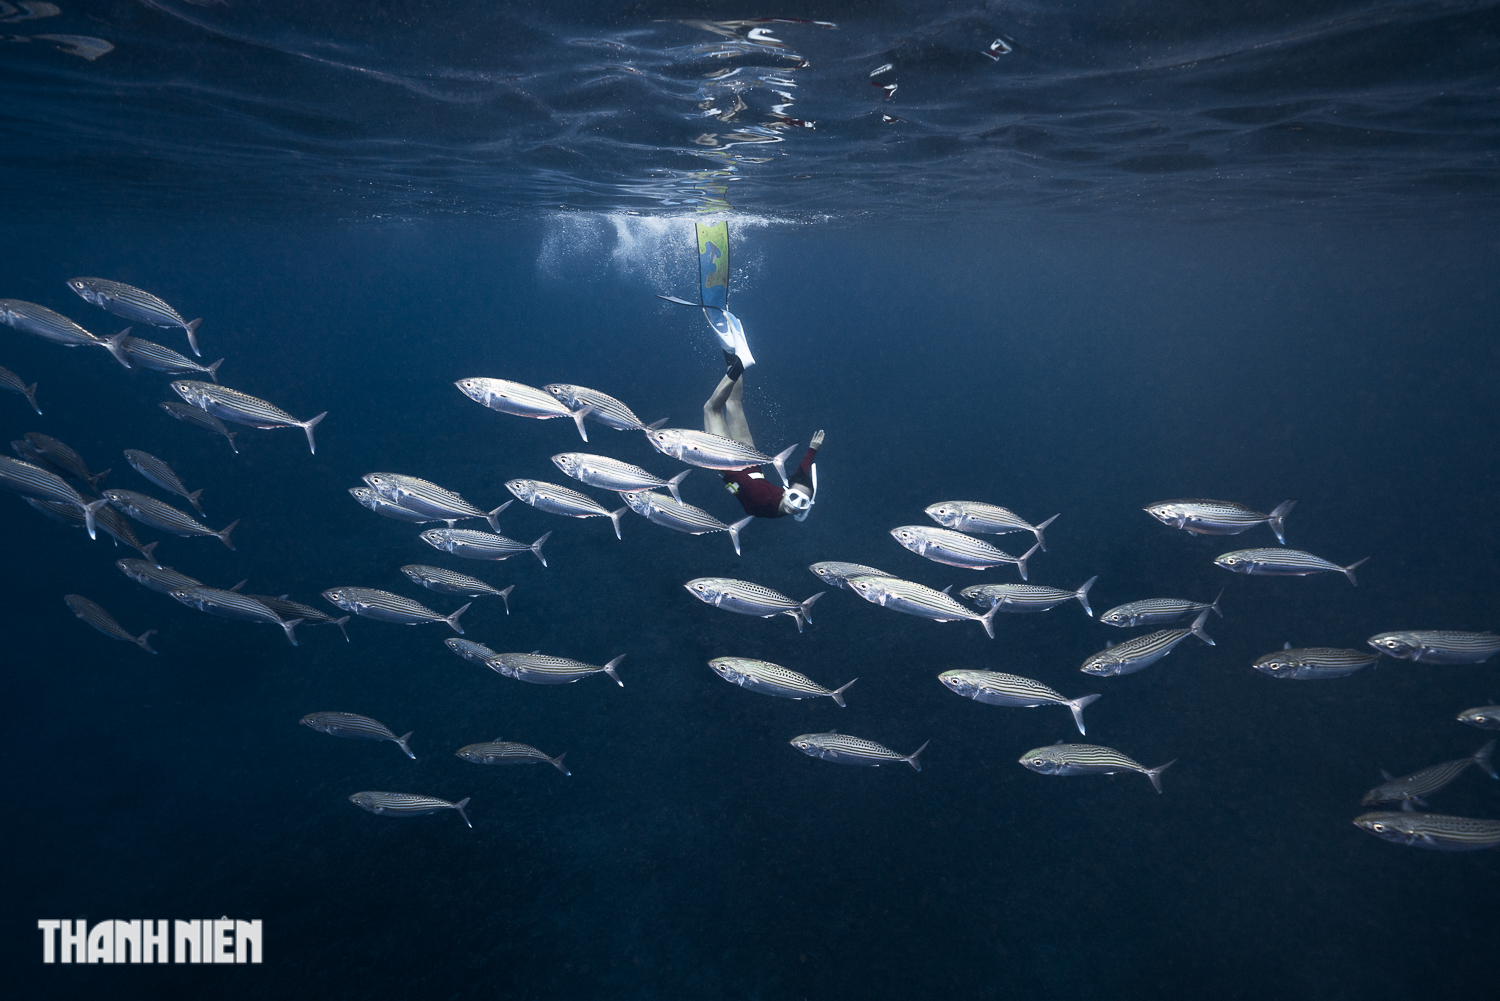 'Kỳ thú': Nhiếp ảnh gia Việt mê săn ảnh dưới đại dương - Ảnh 12.